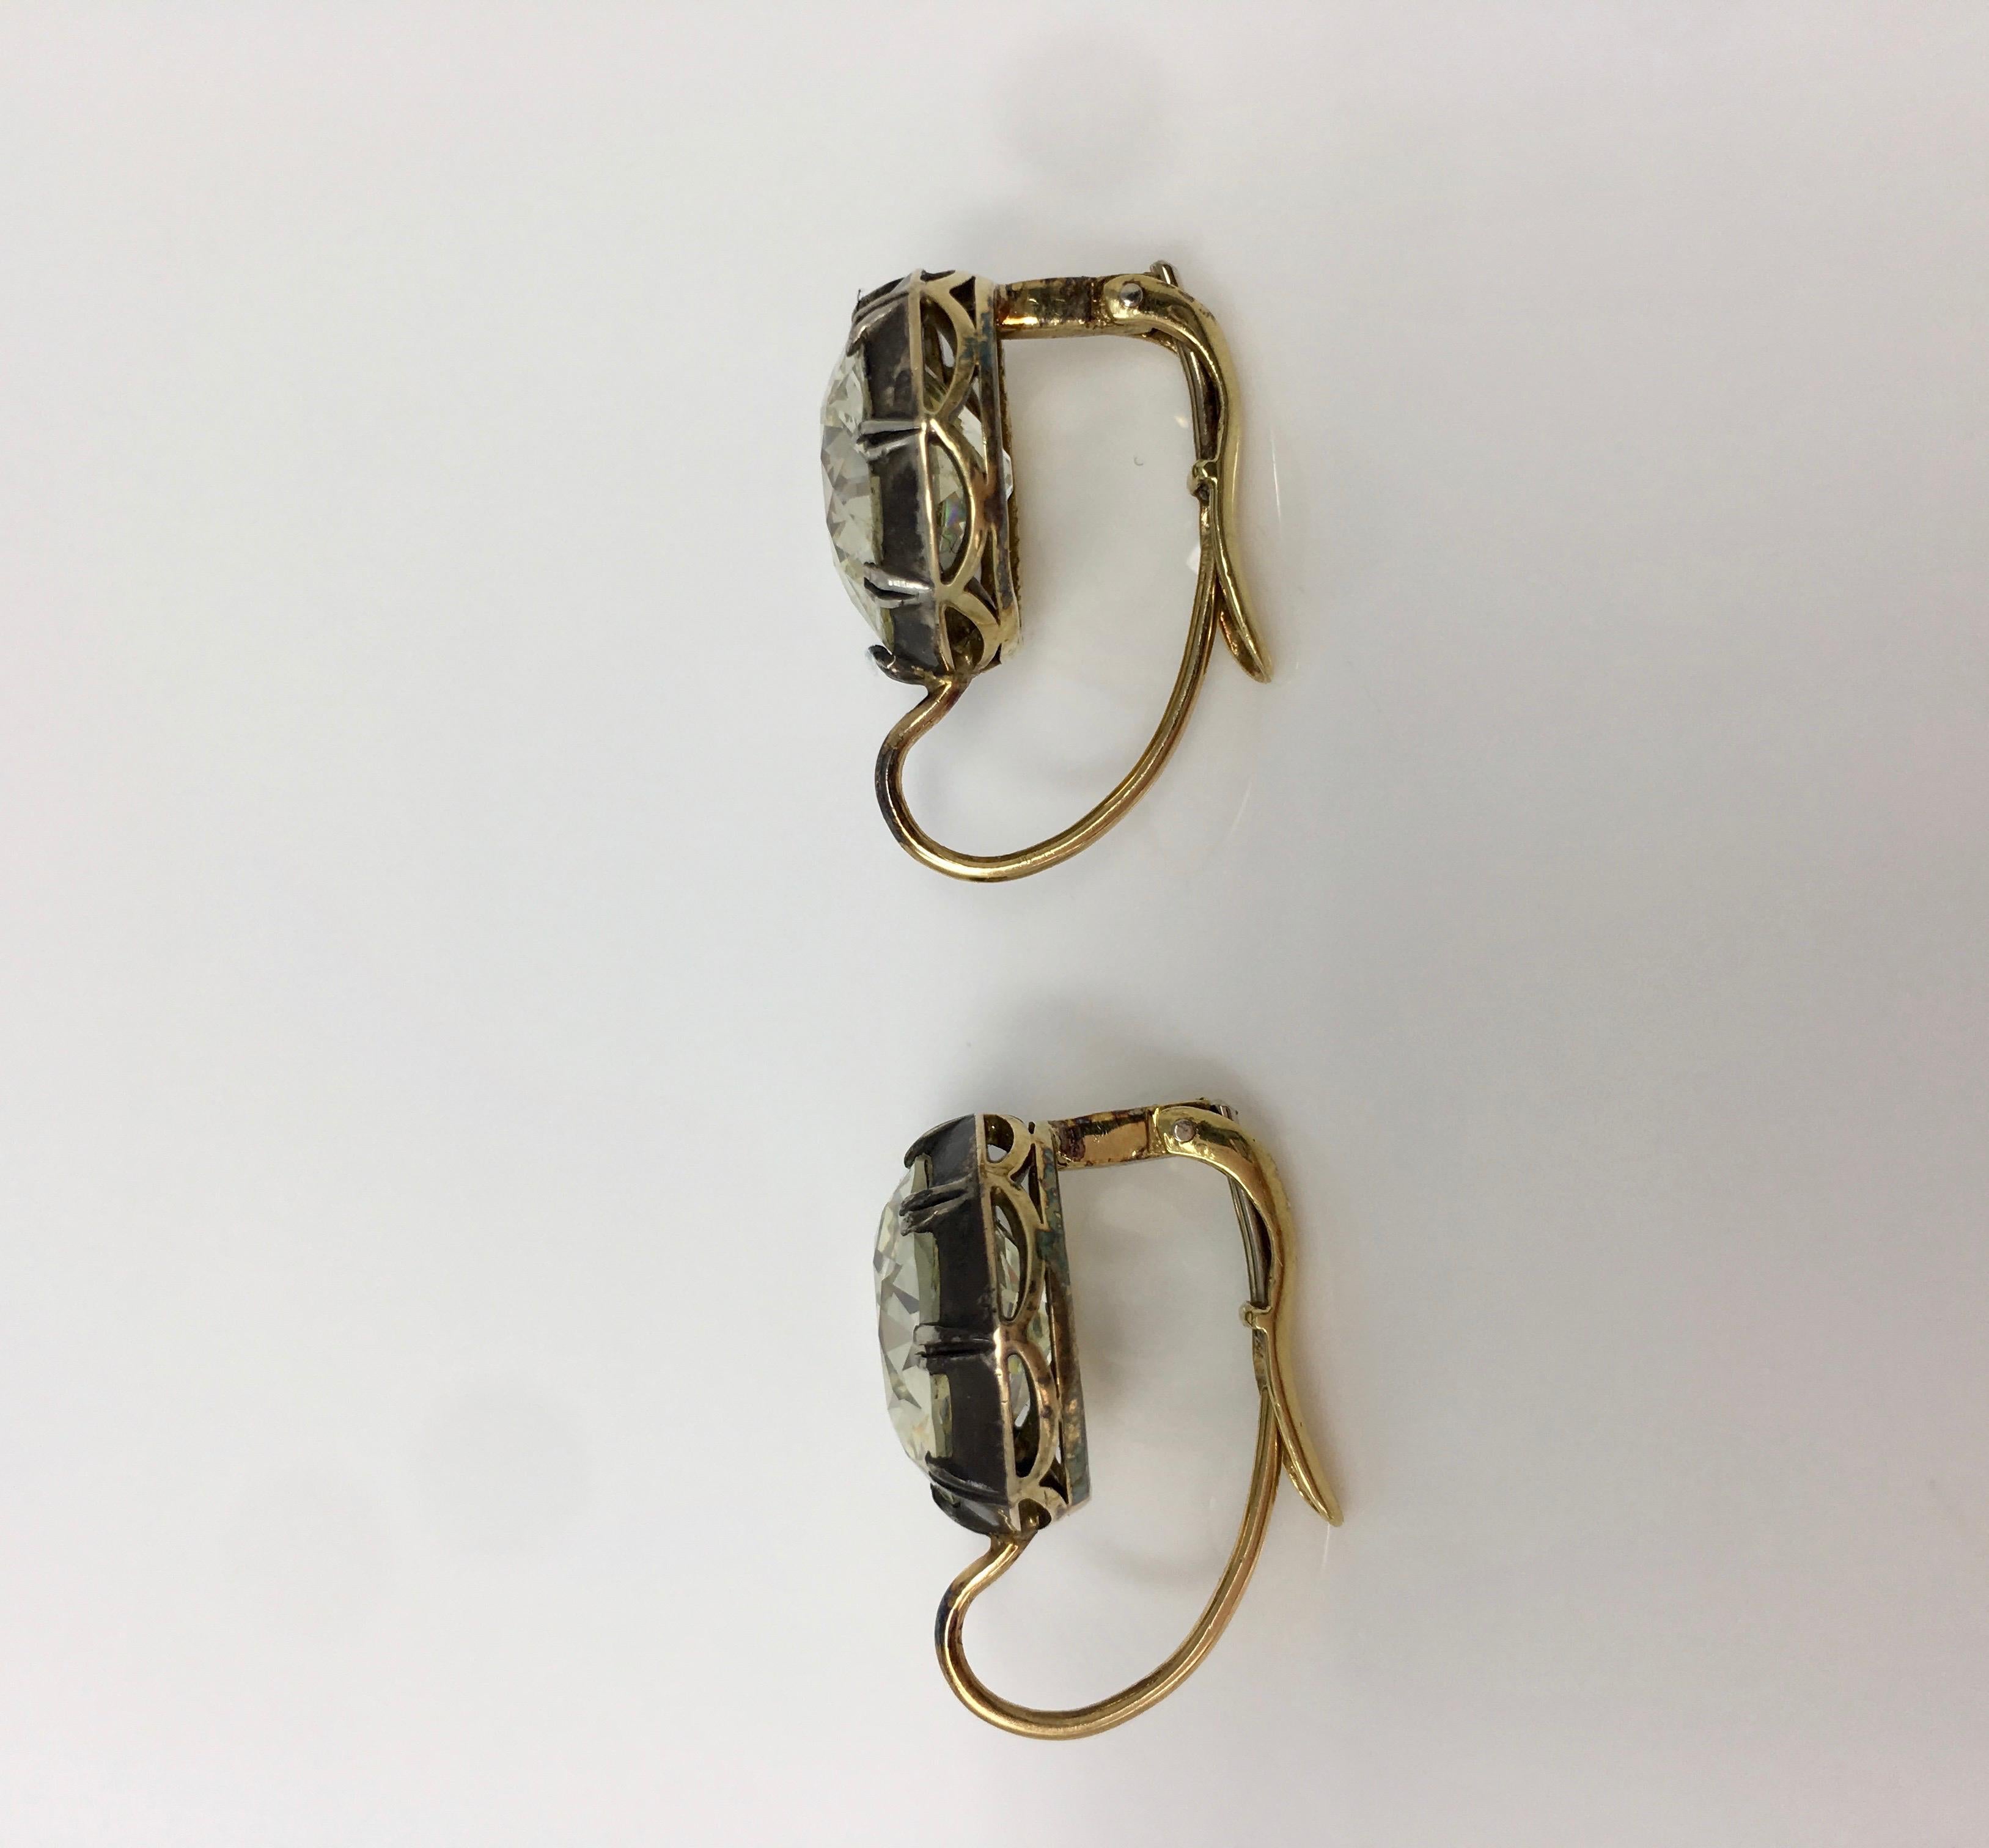 11.67 Carat Old European Cut Diamond Antique Style Dangle Earrings in 18 K Gold 4